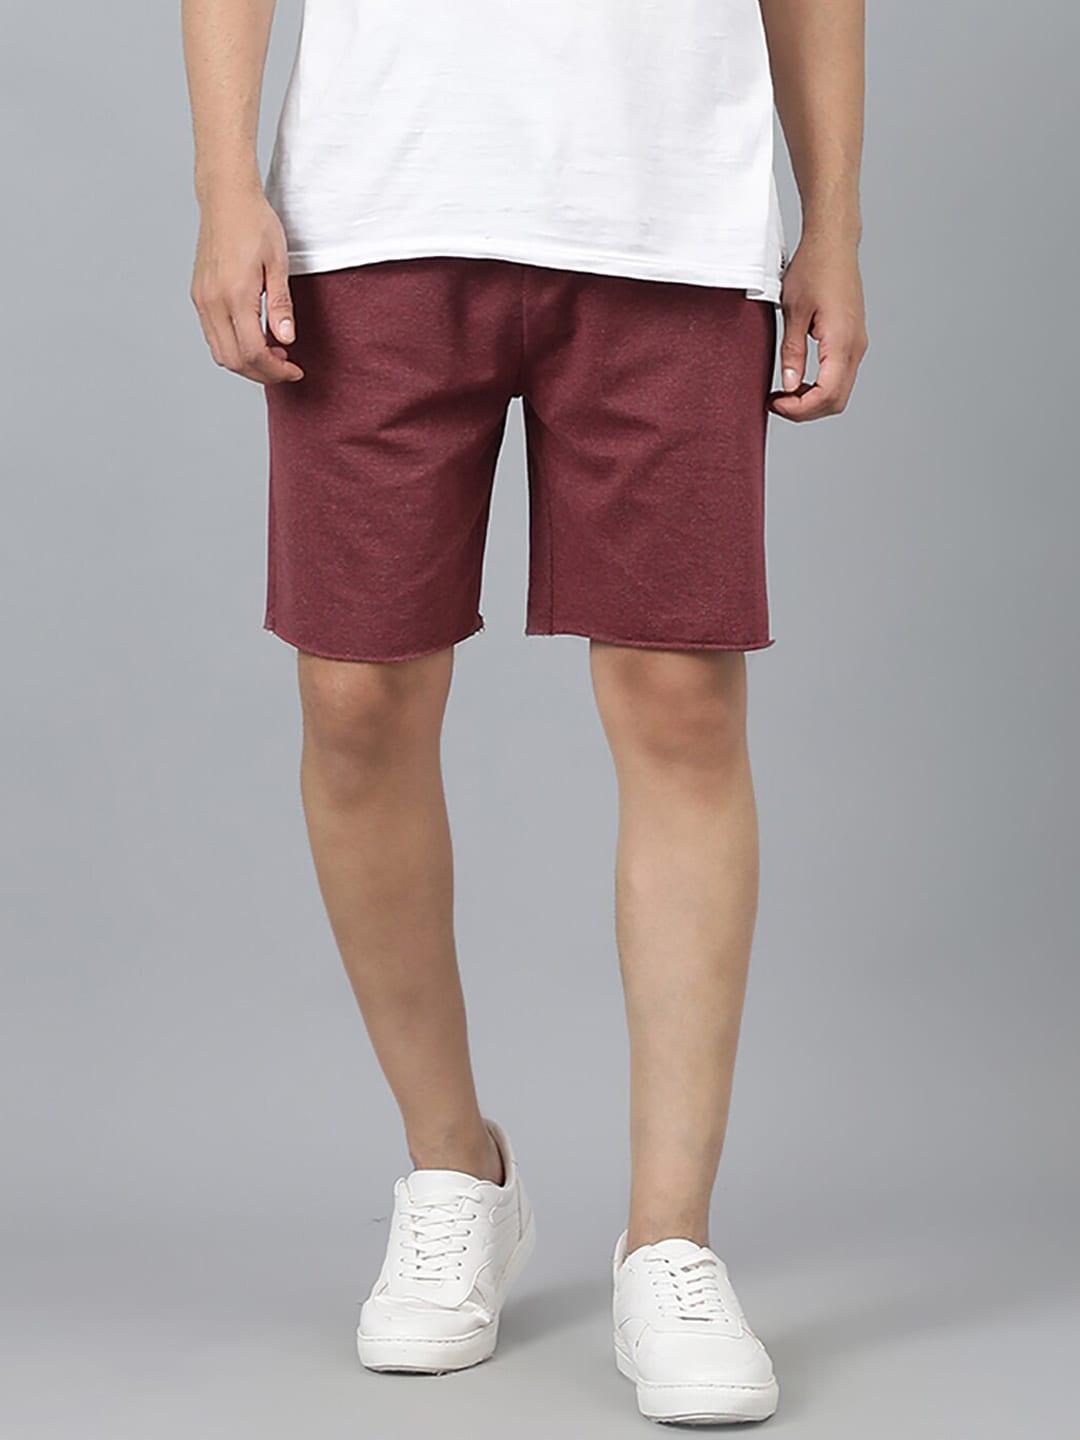 kotty men maroon mid-rise regular shorts